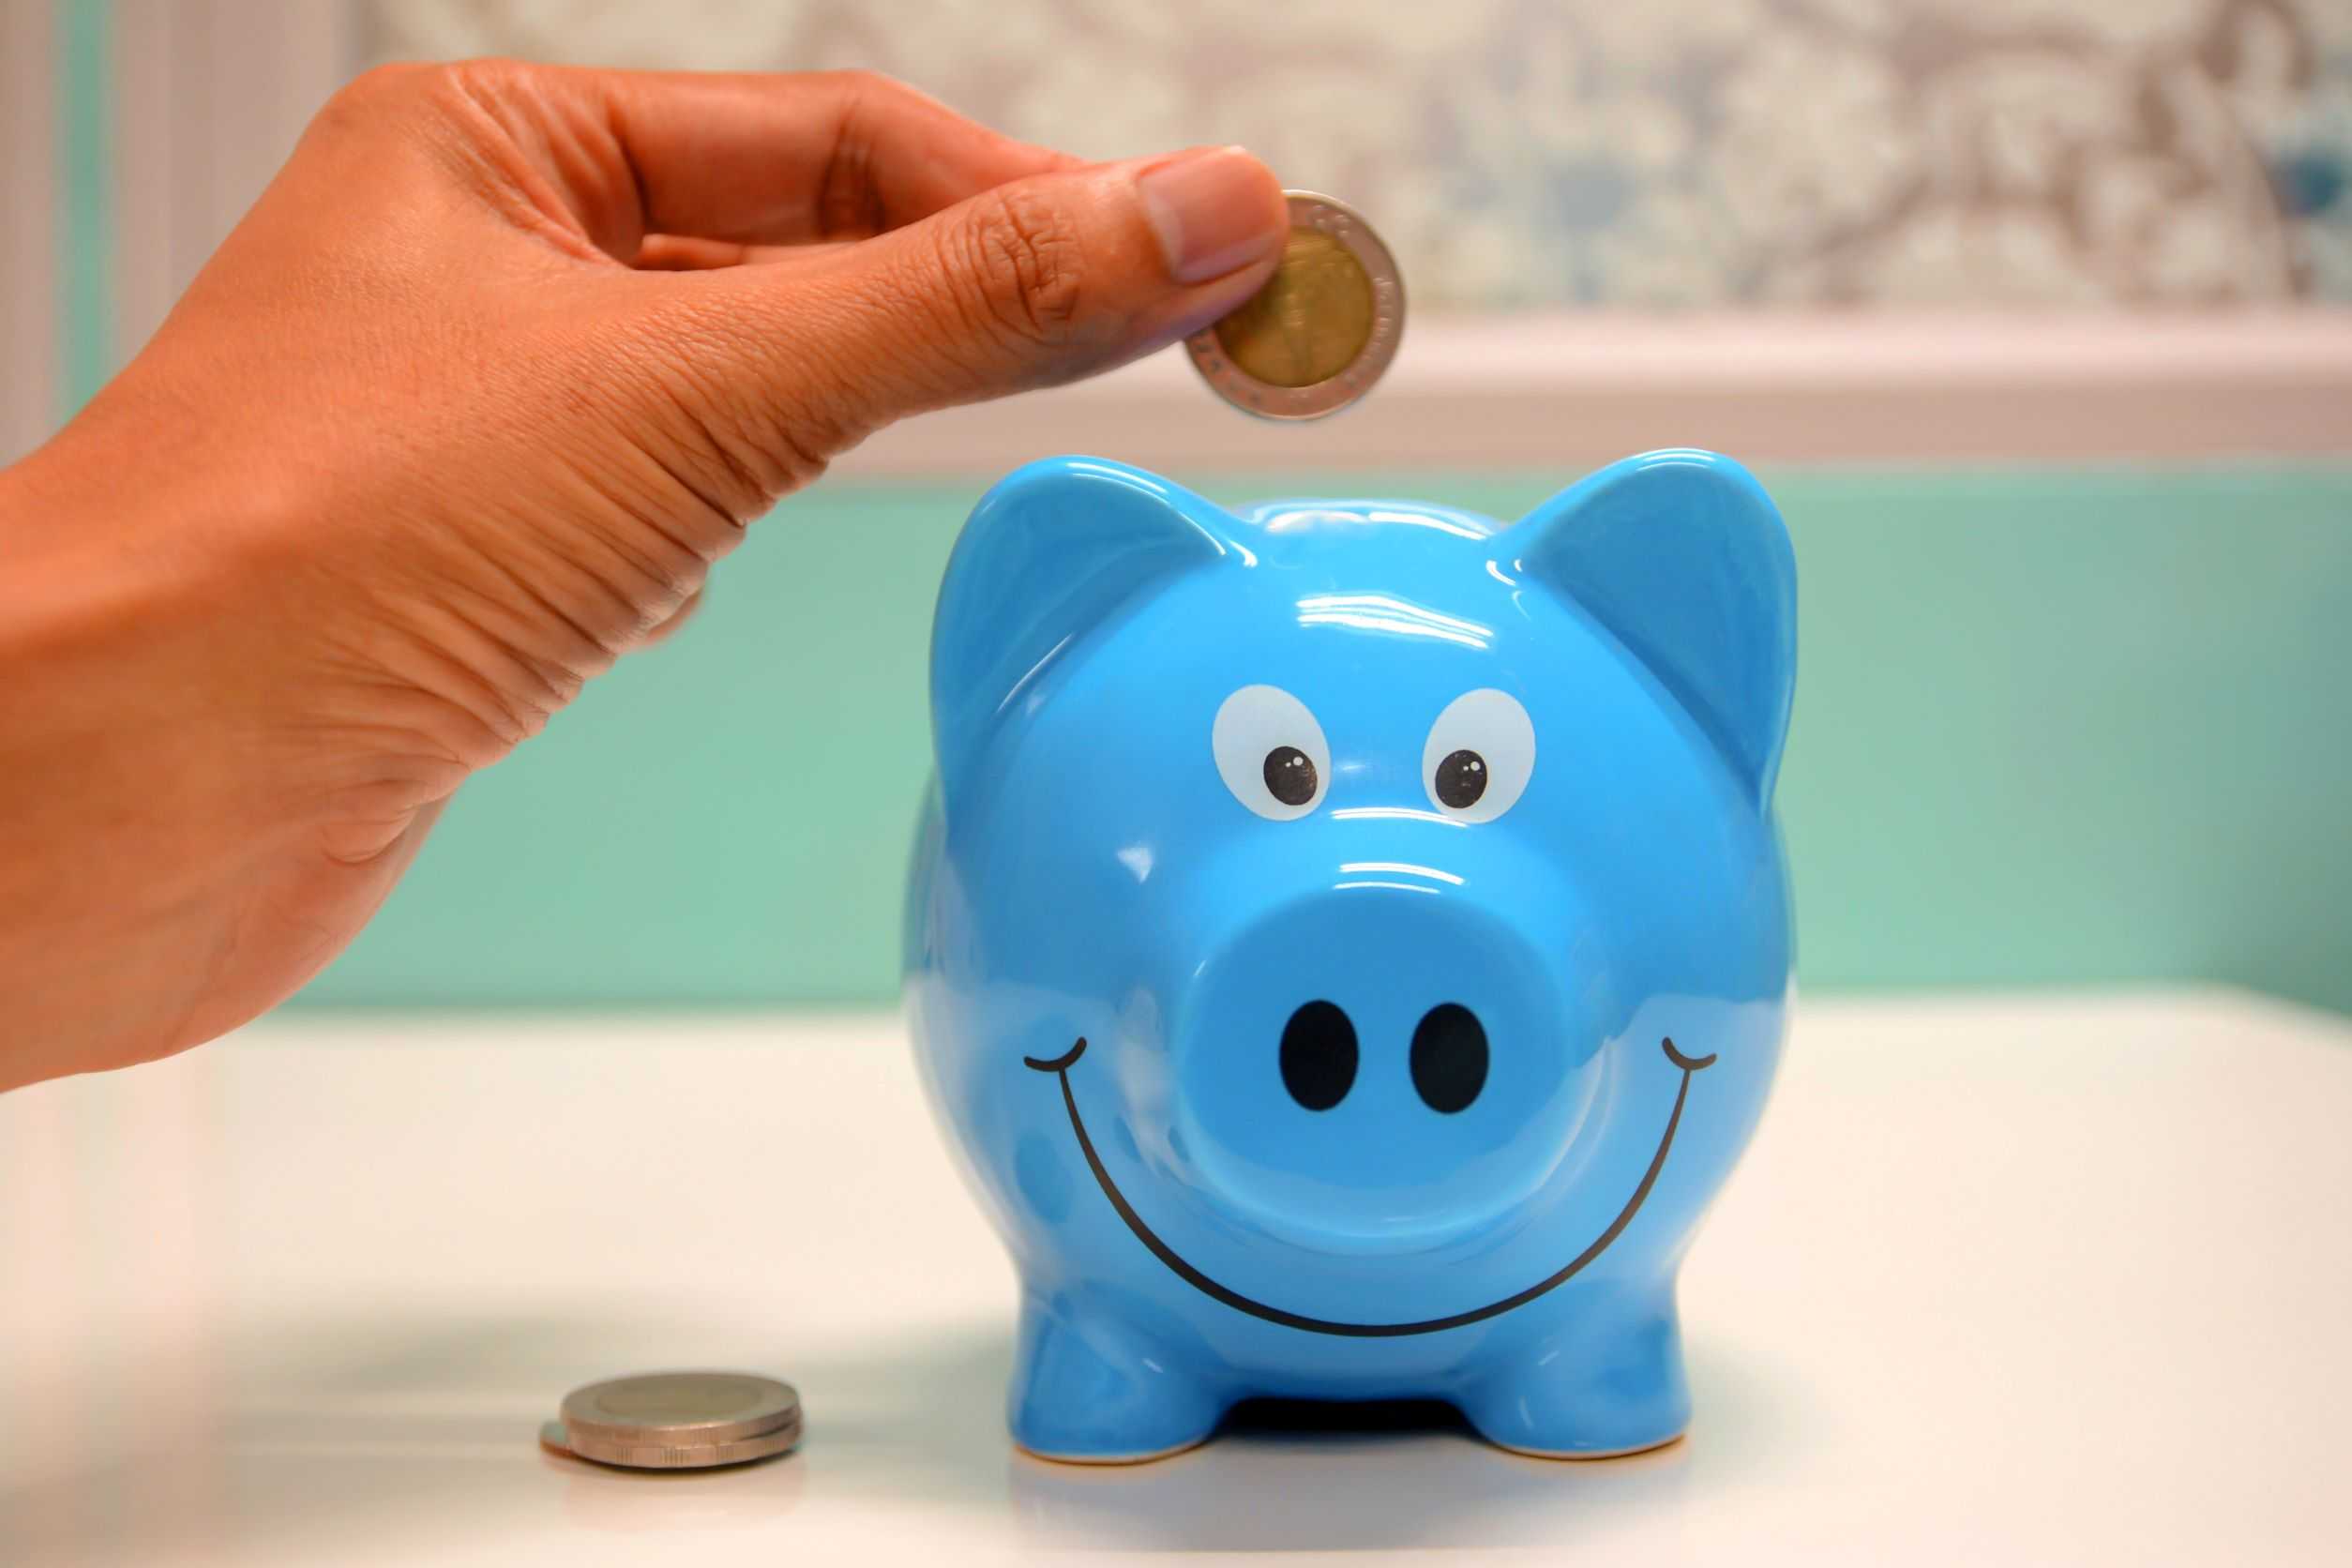 Throwing coin into piggy bank